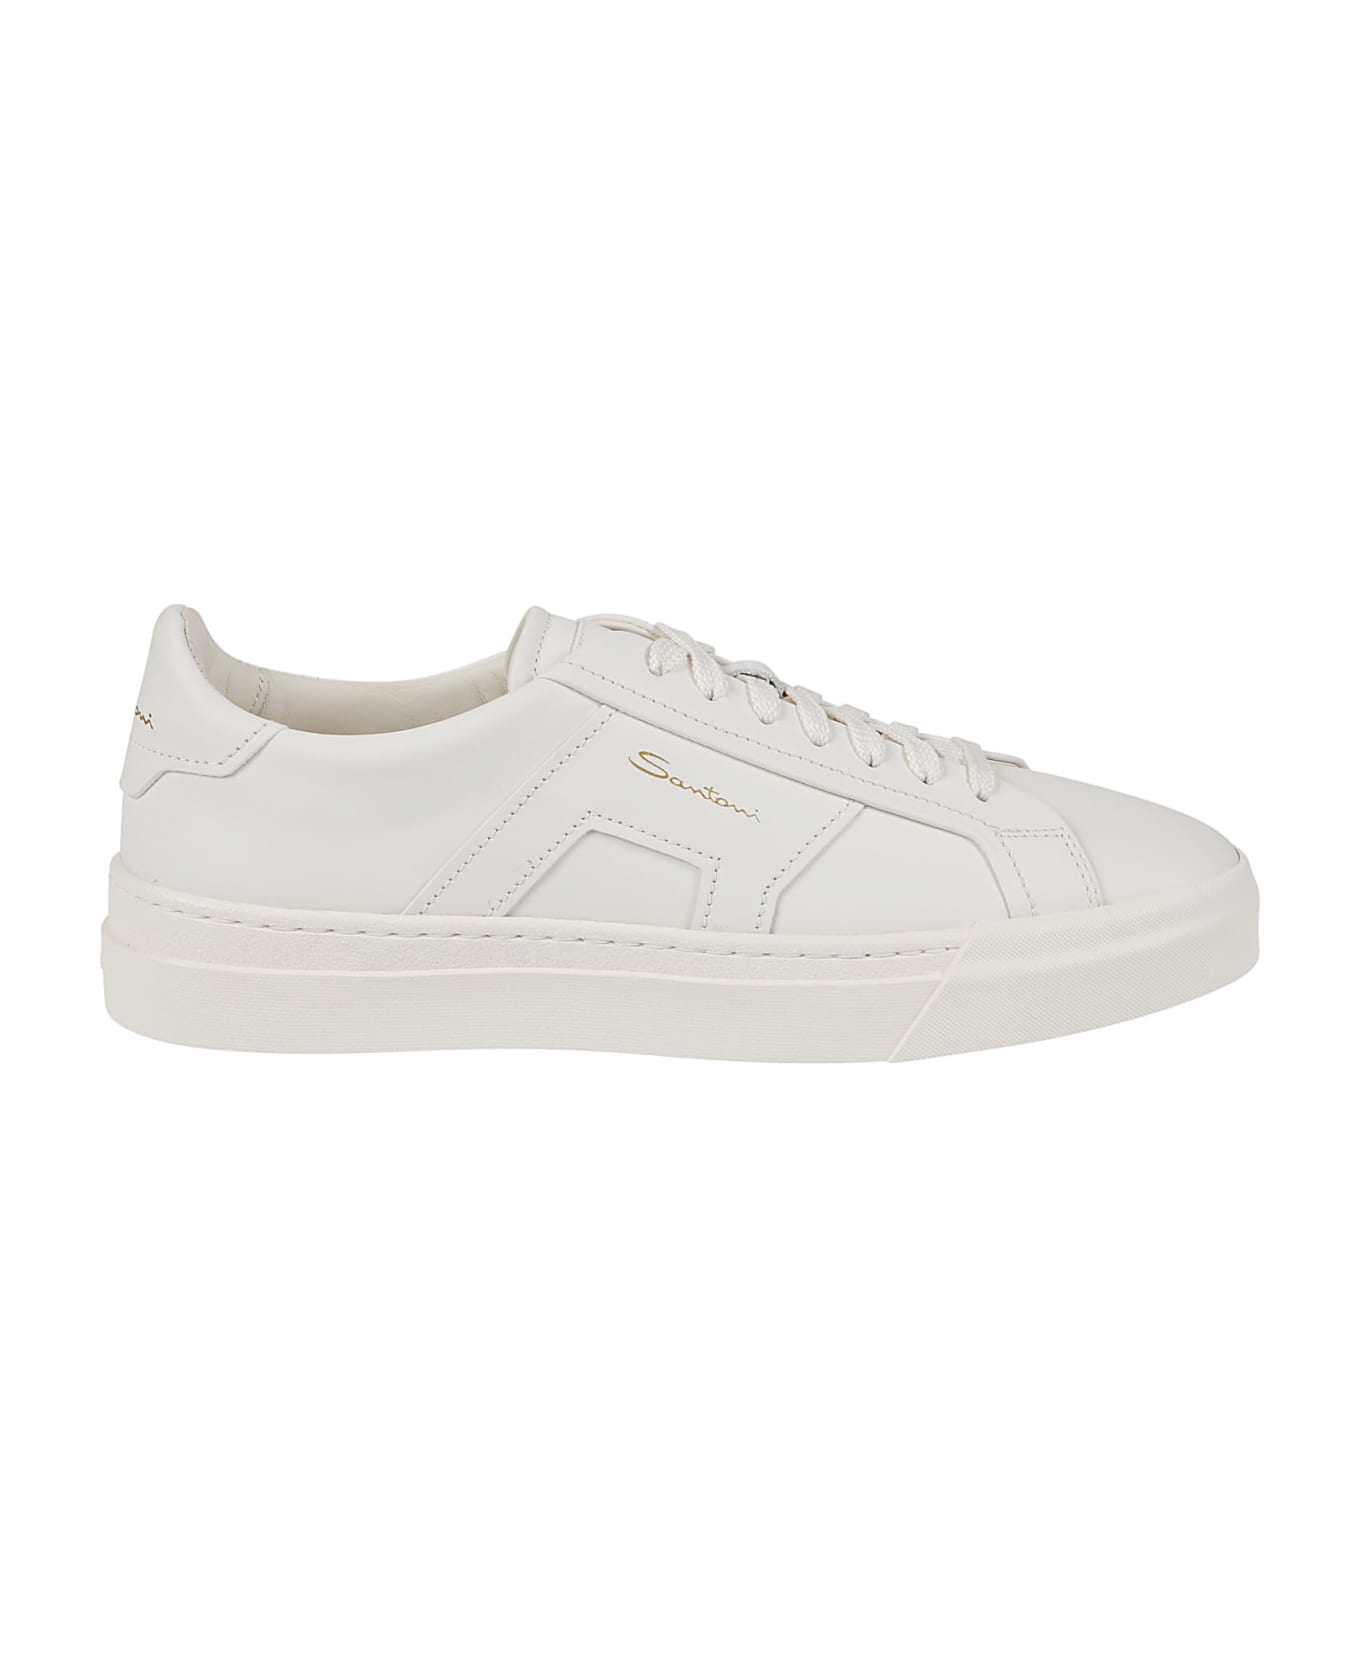 Santoni Dbs1 Low Top Sneakers - White